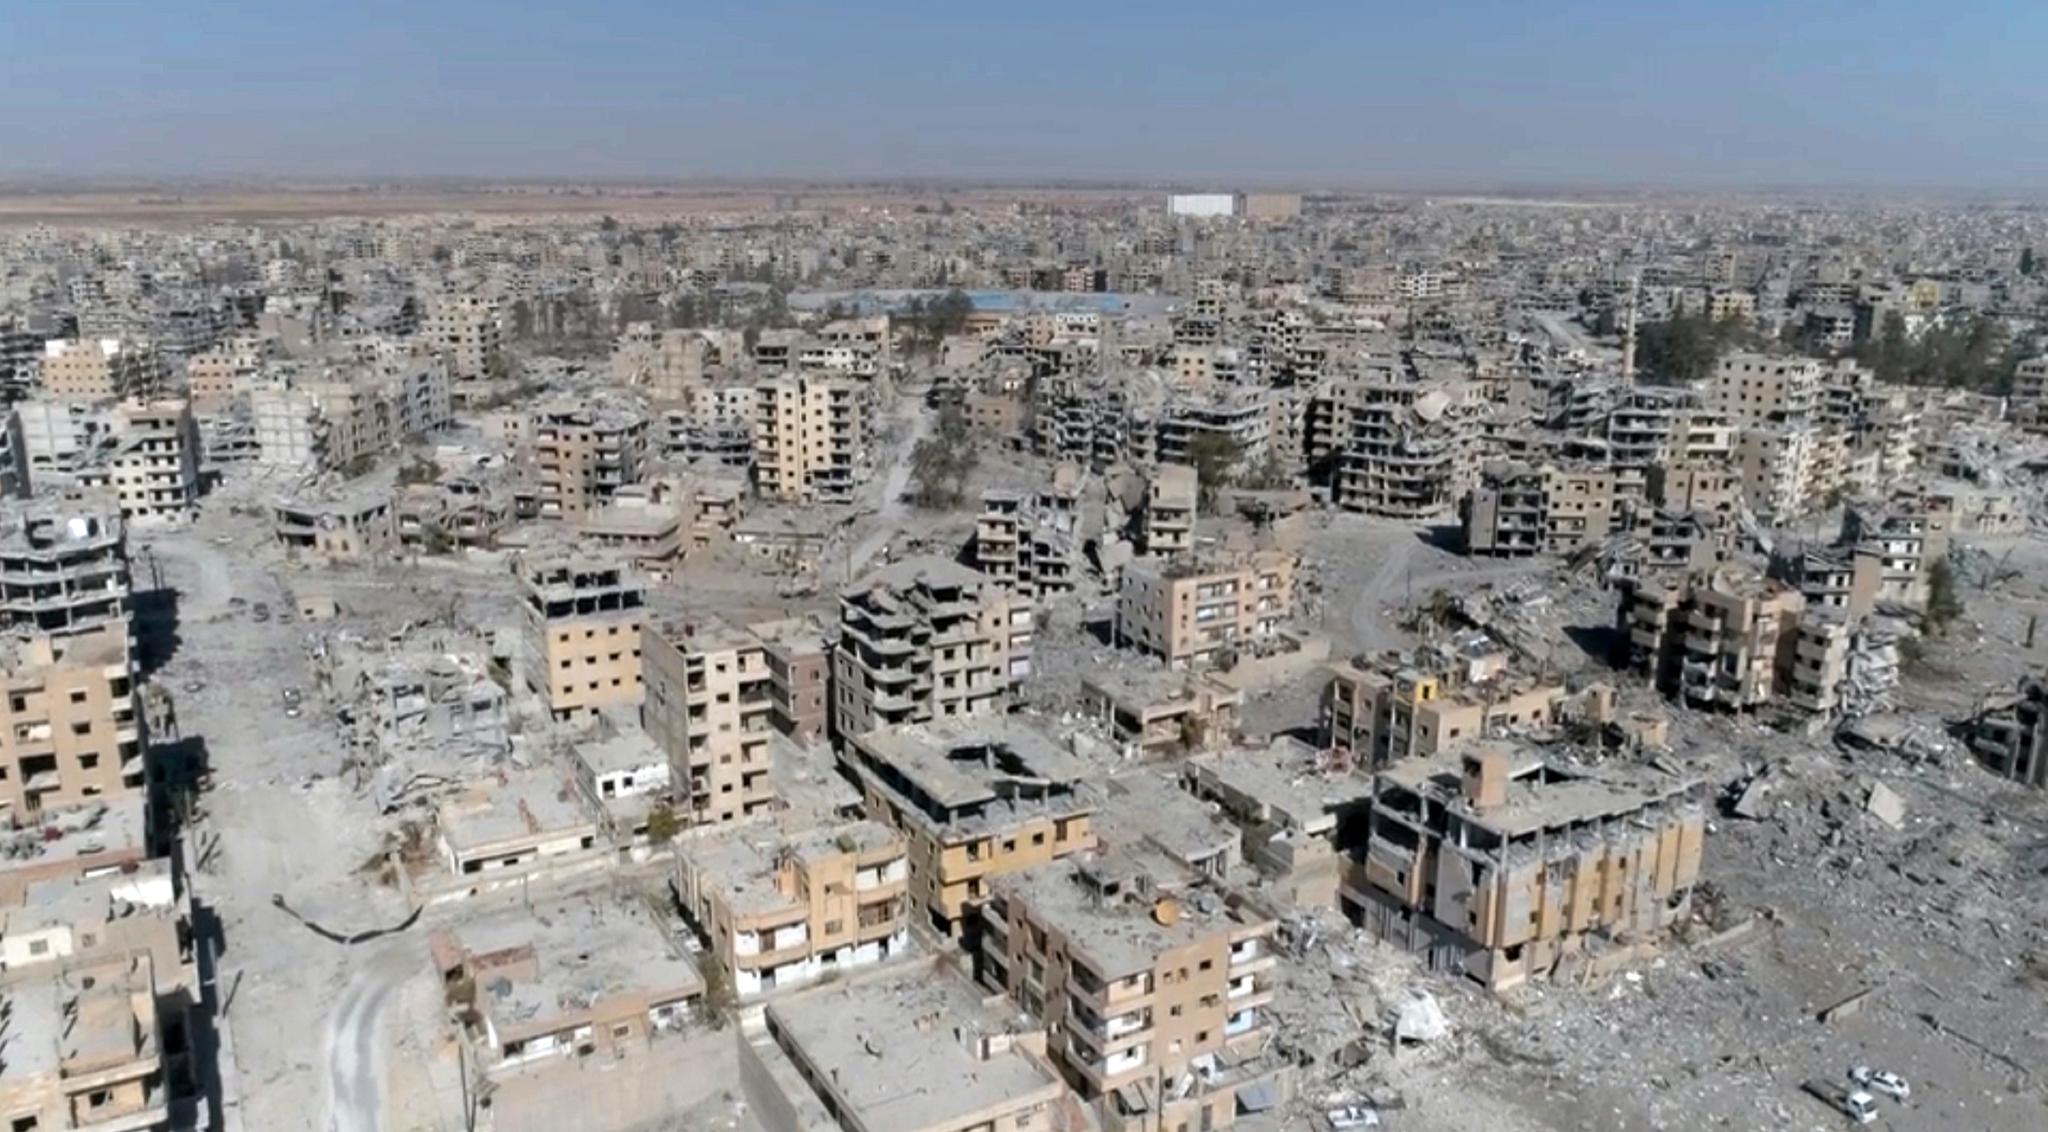 Flyangrepene førte til massive skader i Raqqa i Syria, som fungerte som IS-hovedstaden. 